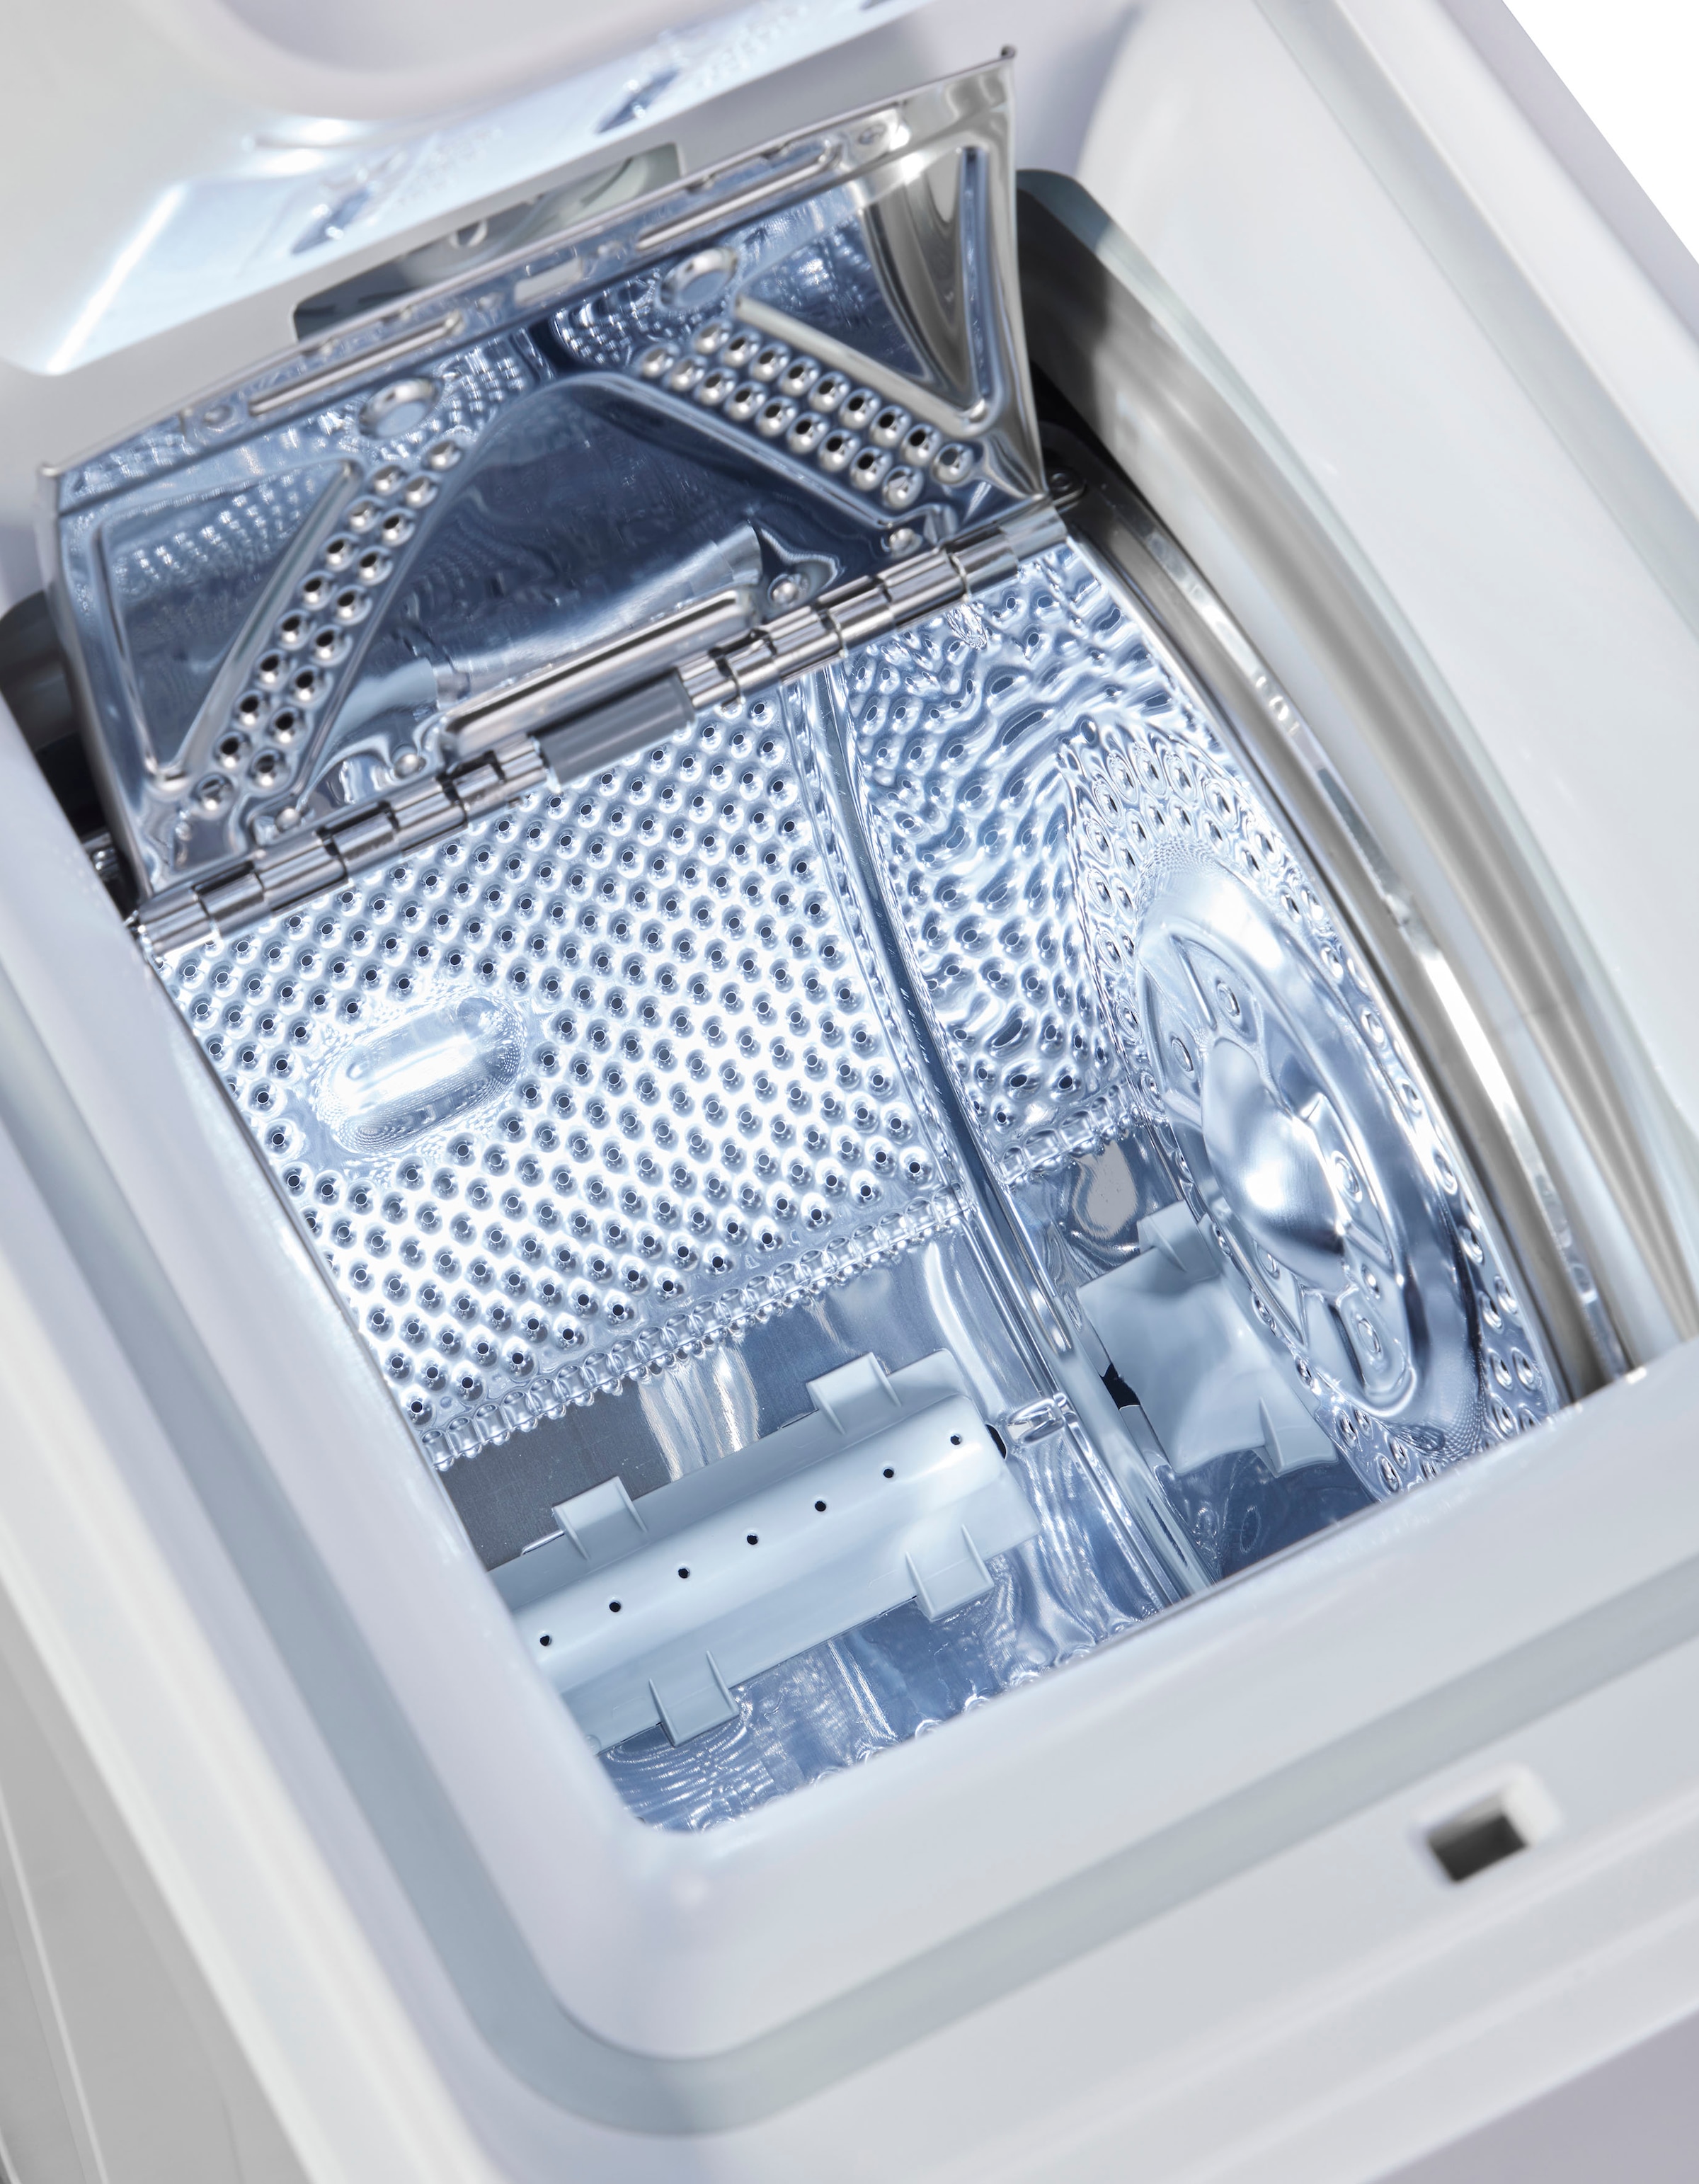 BAUKNECHT Waschmaschine Toplader »WMT B5, B5«, U/ min 1200 WMT bestellen 6513 kg, 6513 6